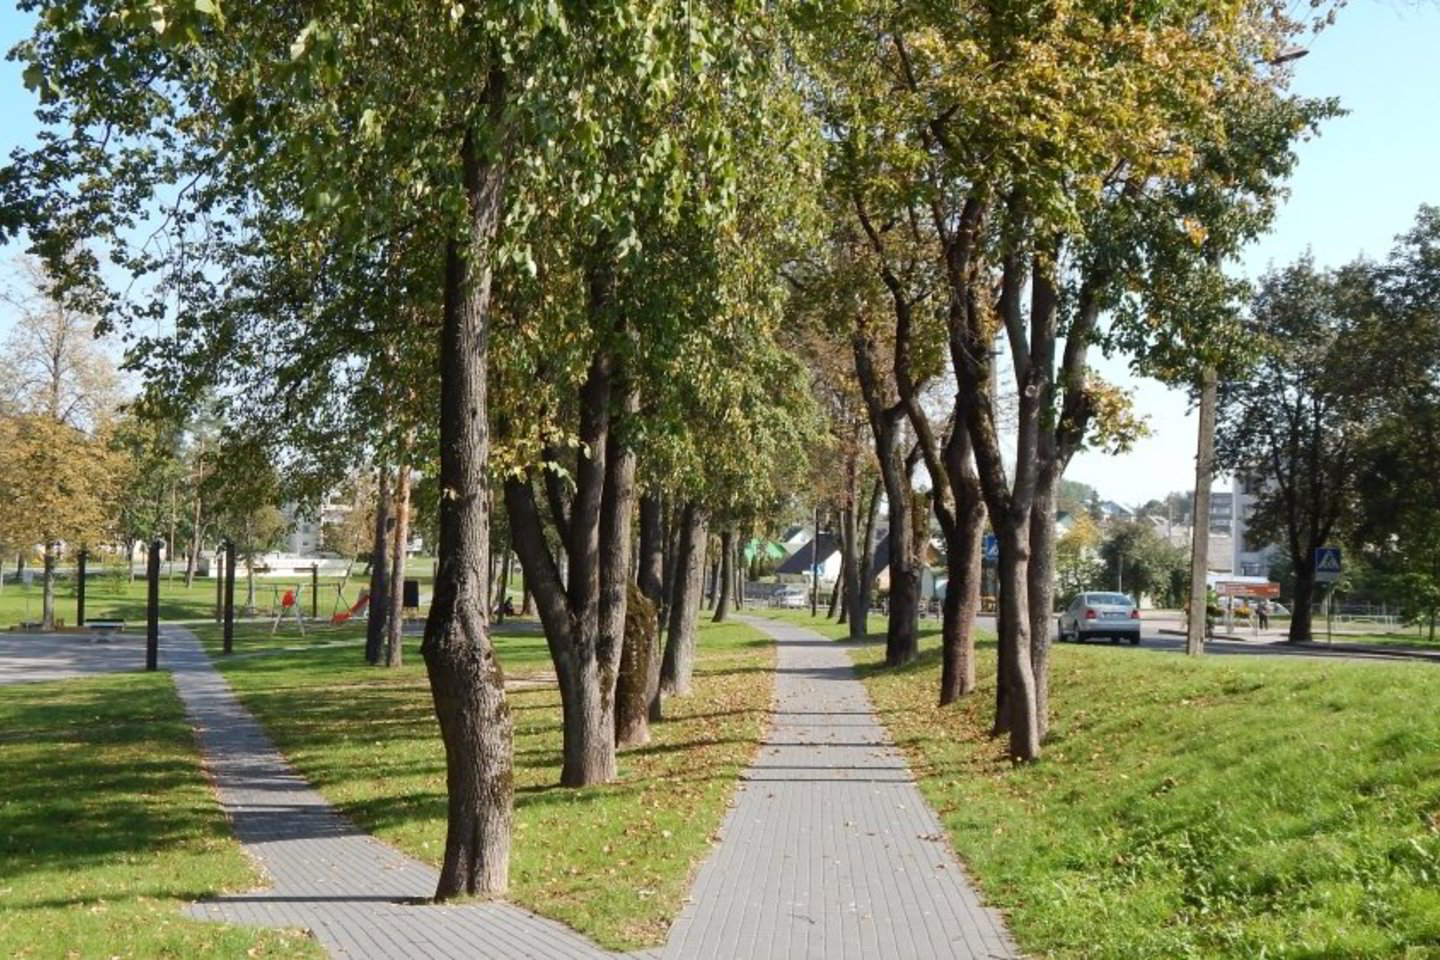 Raseiniškiai socialiniuose tinkluose dalijosi nerimo kupinais pranešimais, kad Raseinių Maironio parke masiškai pjaunami medžiai.<br> miestai.net nuotr.